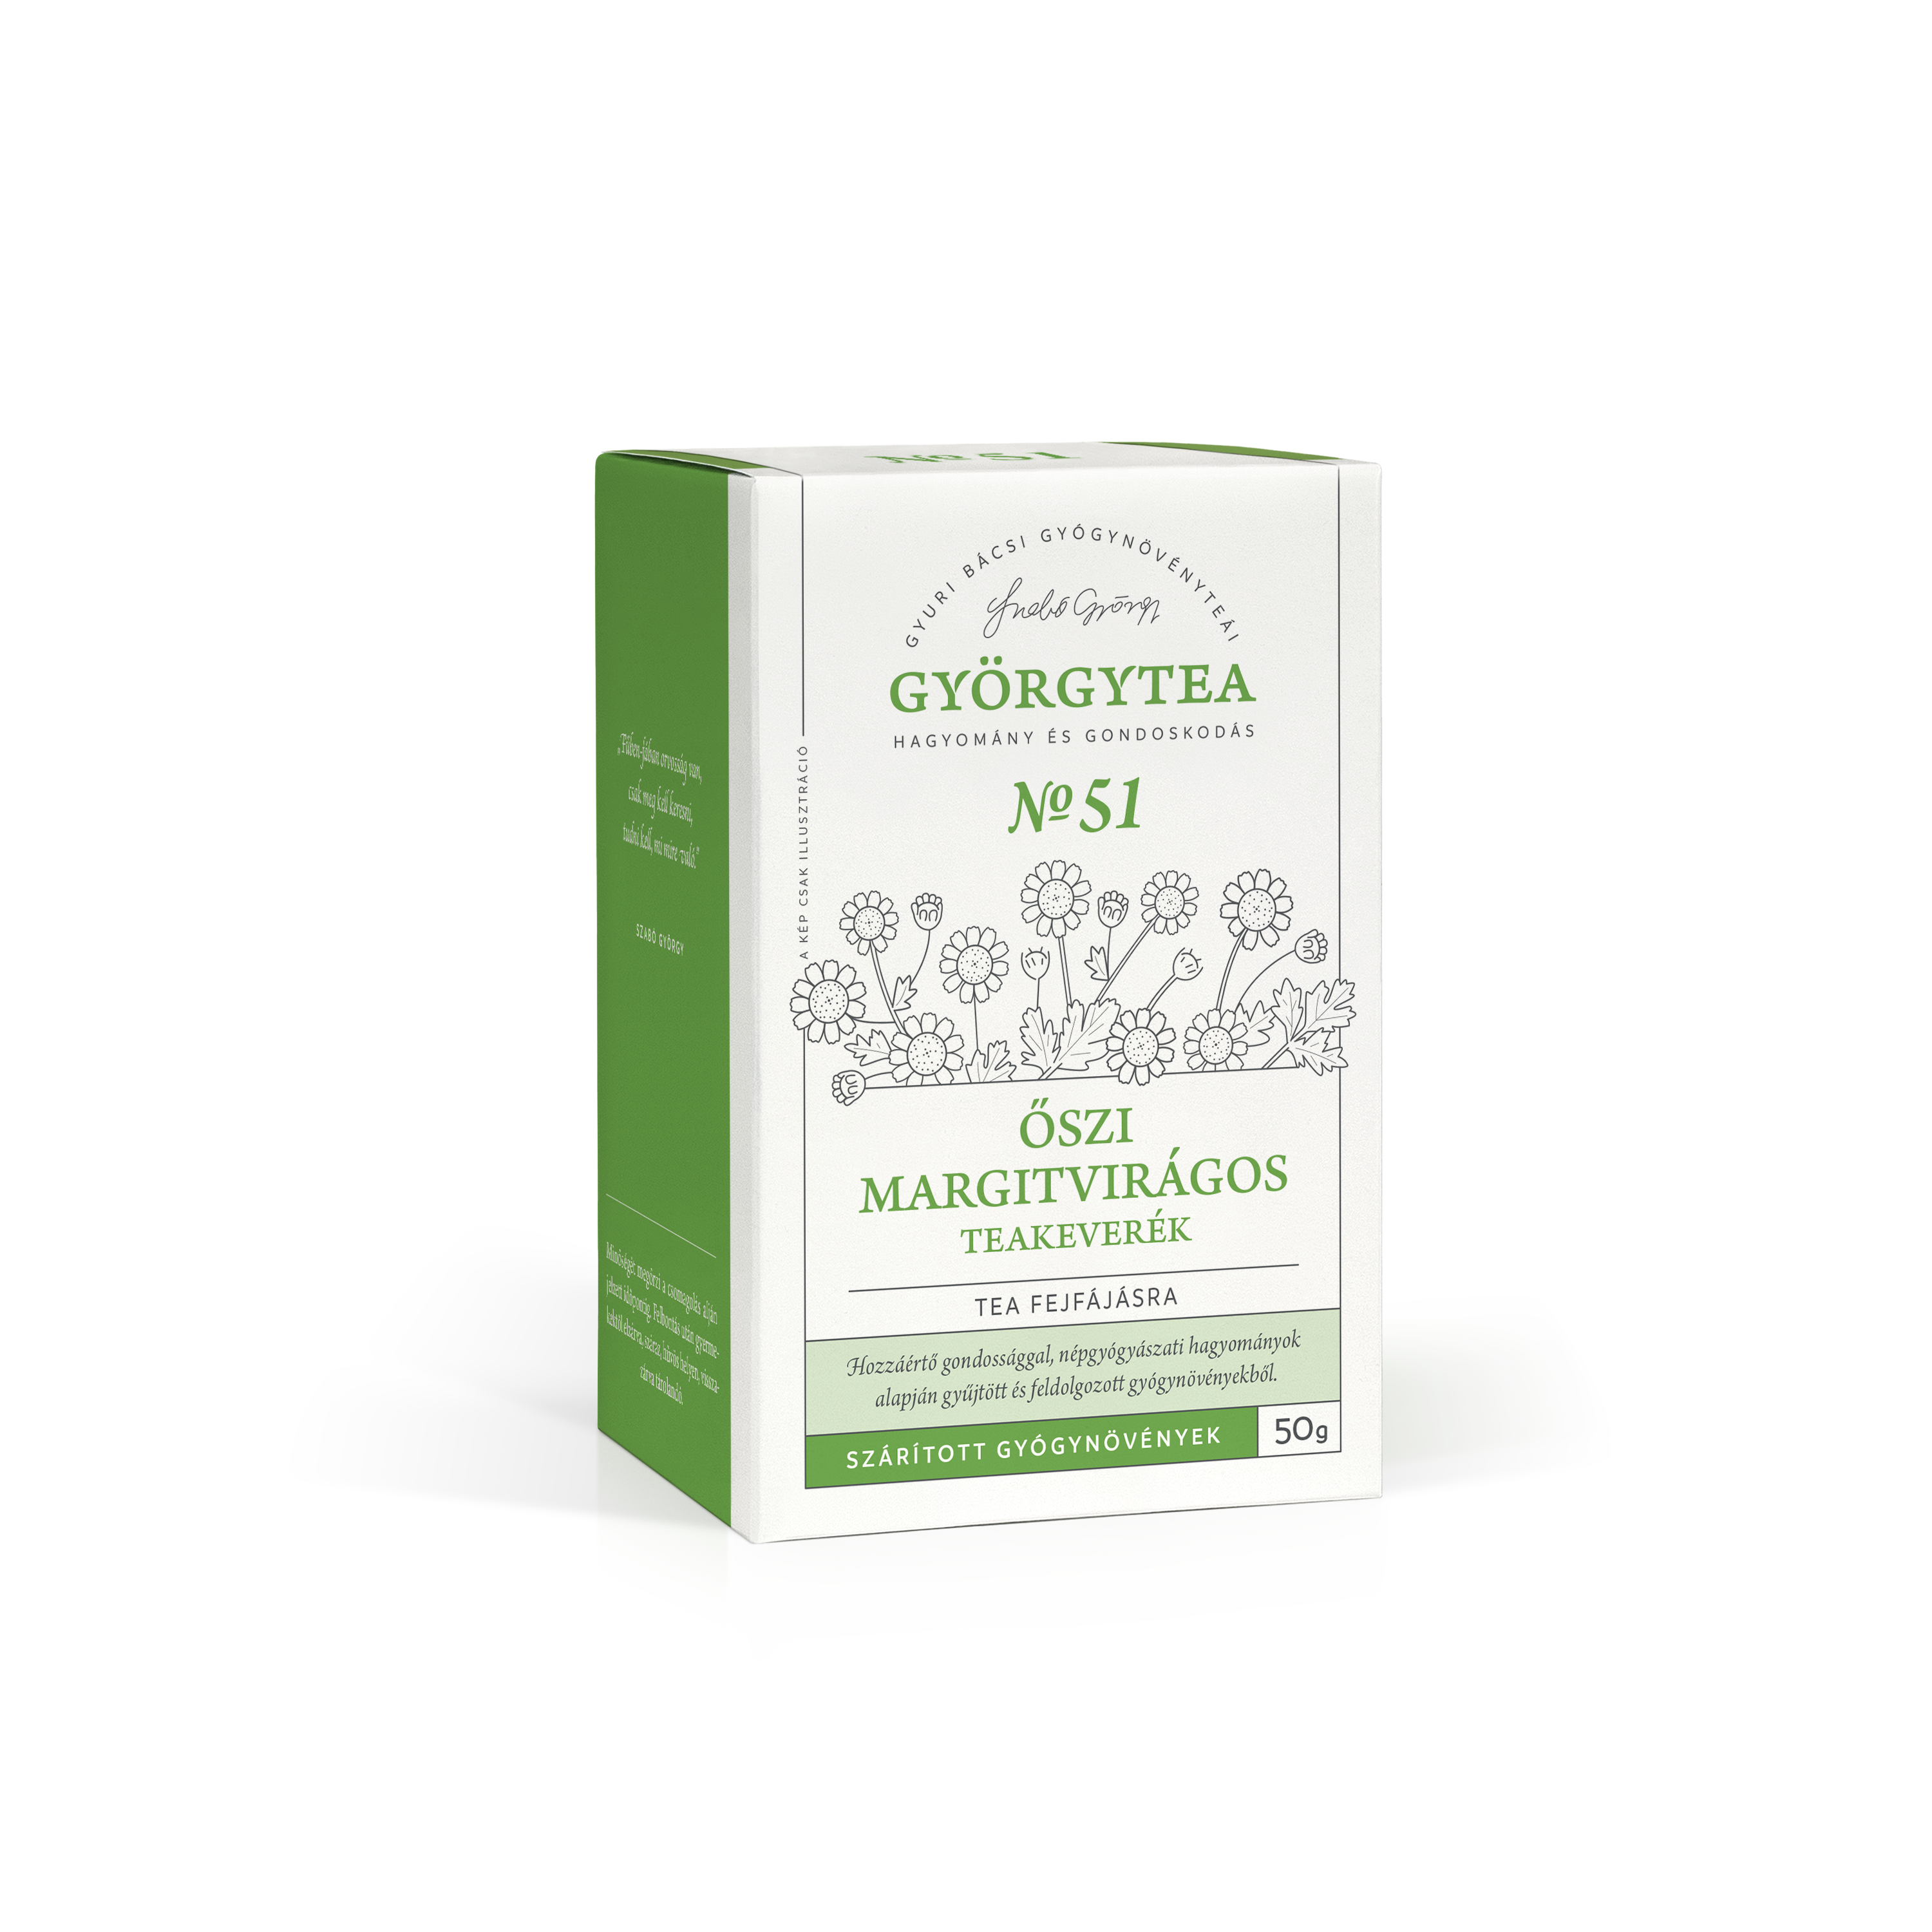 Őszi margitvirágos teakeverék (Tea fejfájásra)